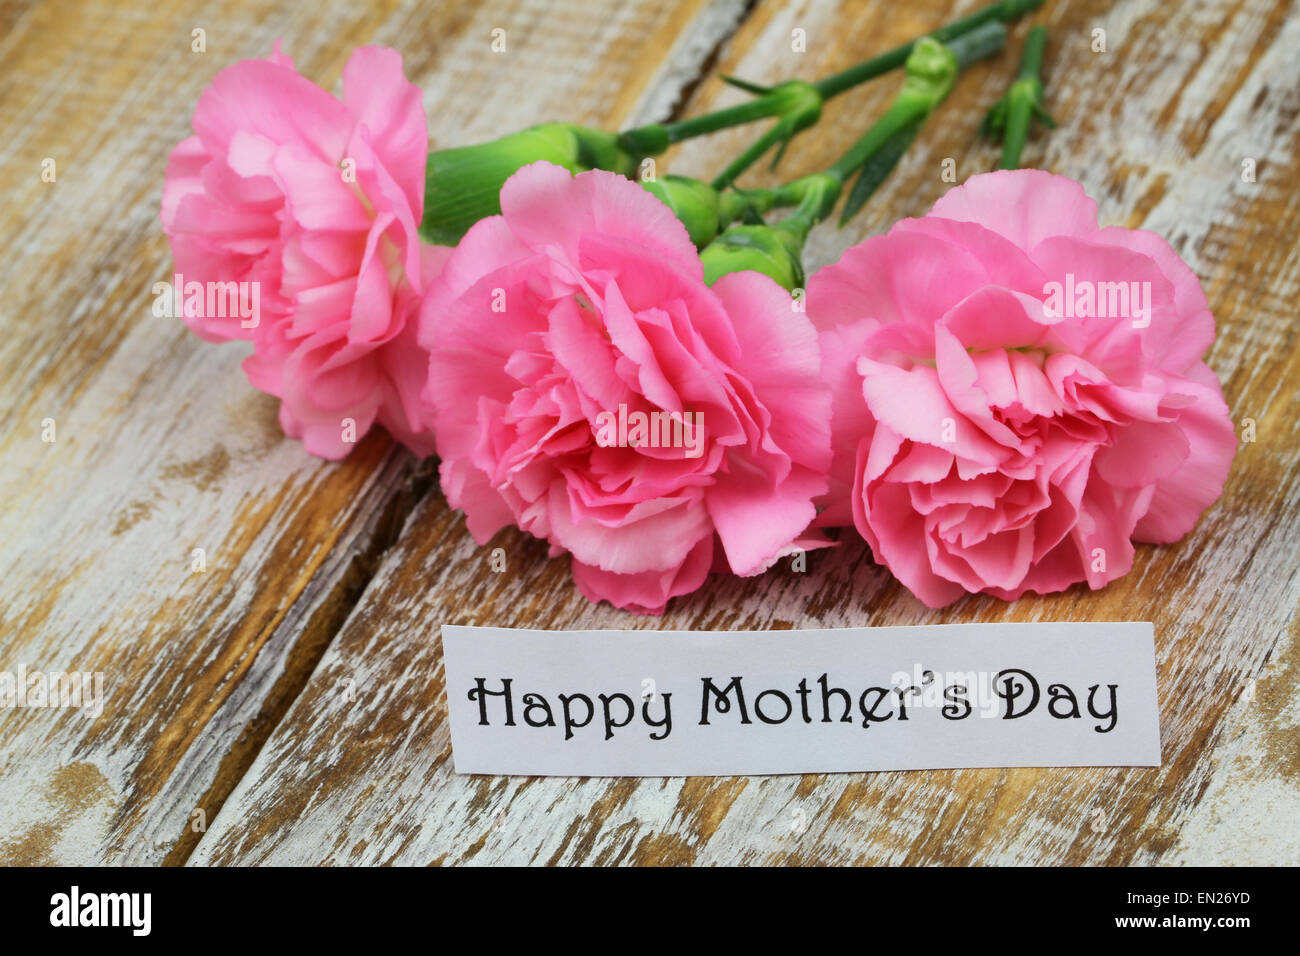 Felice Festa della mamma scheda con i garofani rosa Foto Stock